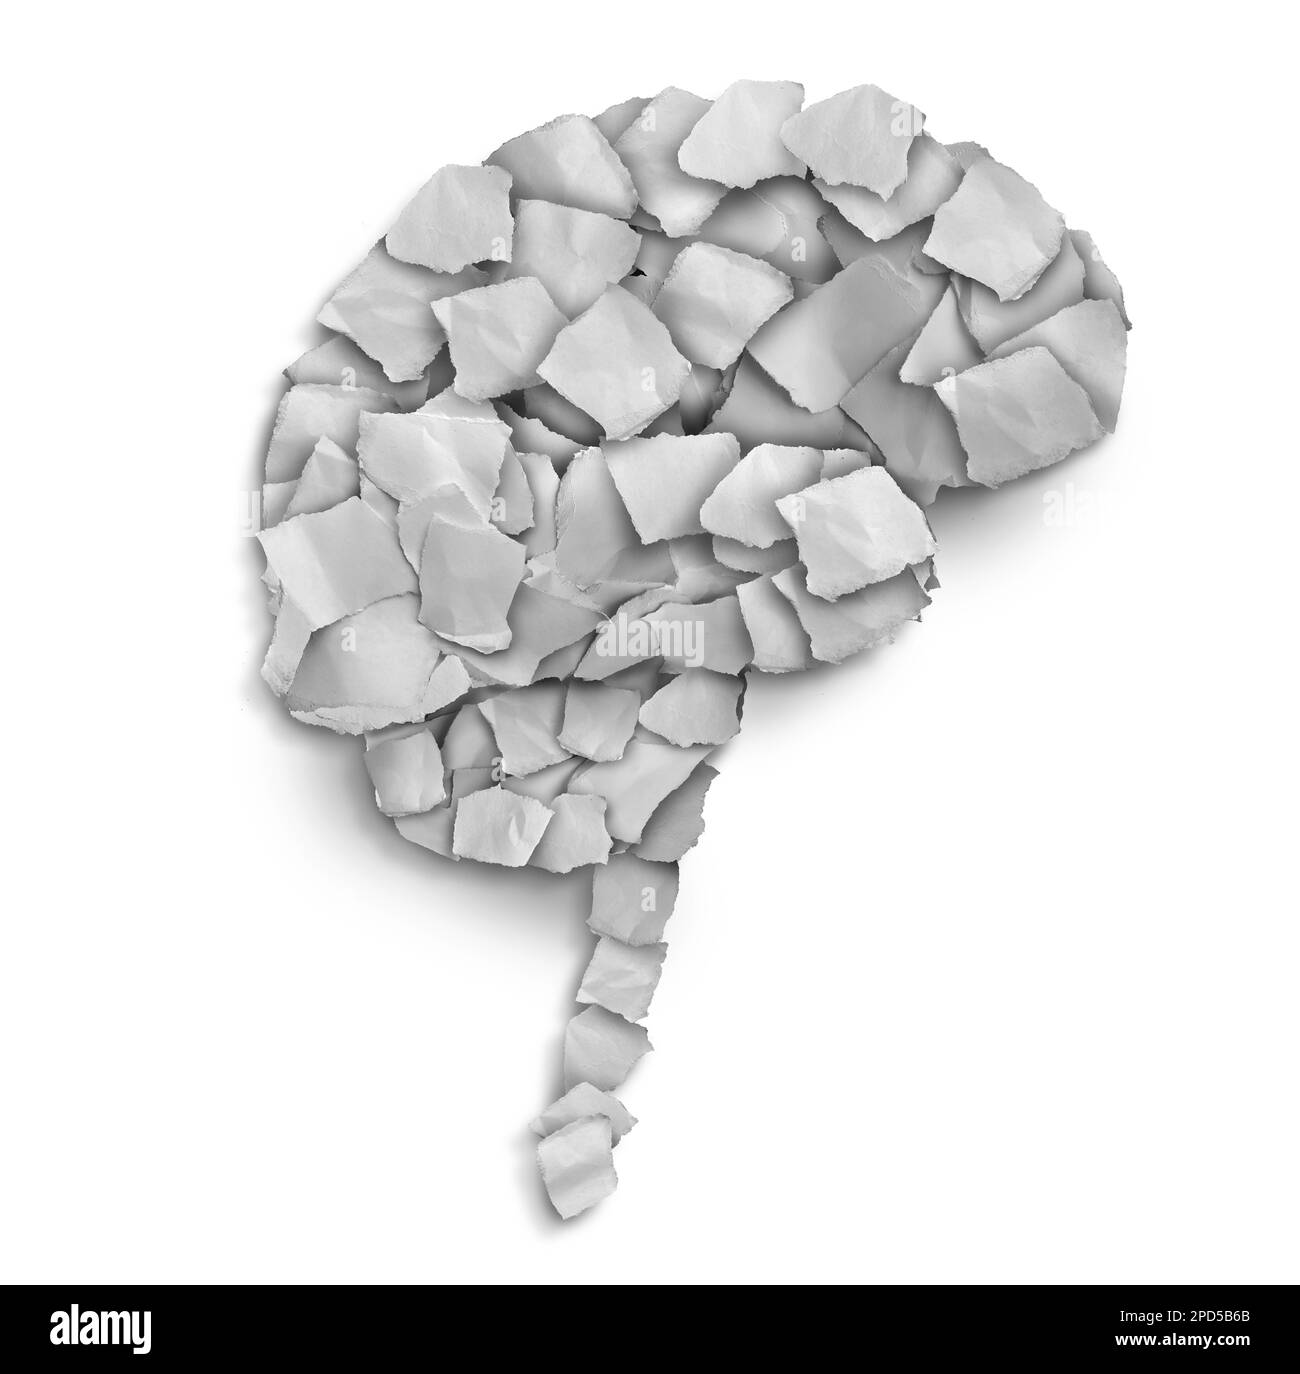 Psicologia umana e psichiatria terapia come un concetto di salute mentale medico con carta strappata organizzata come depressione o ansia come ossessivo-compulsivo Foto Stock